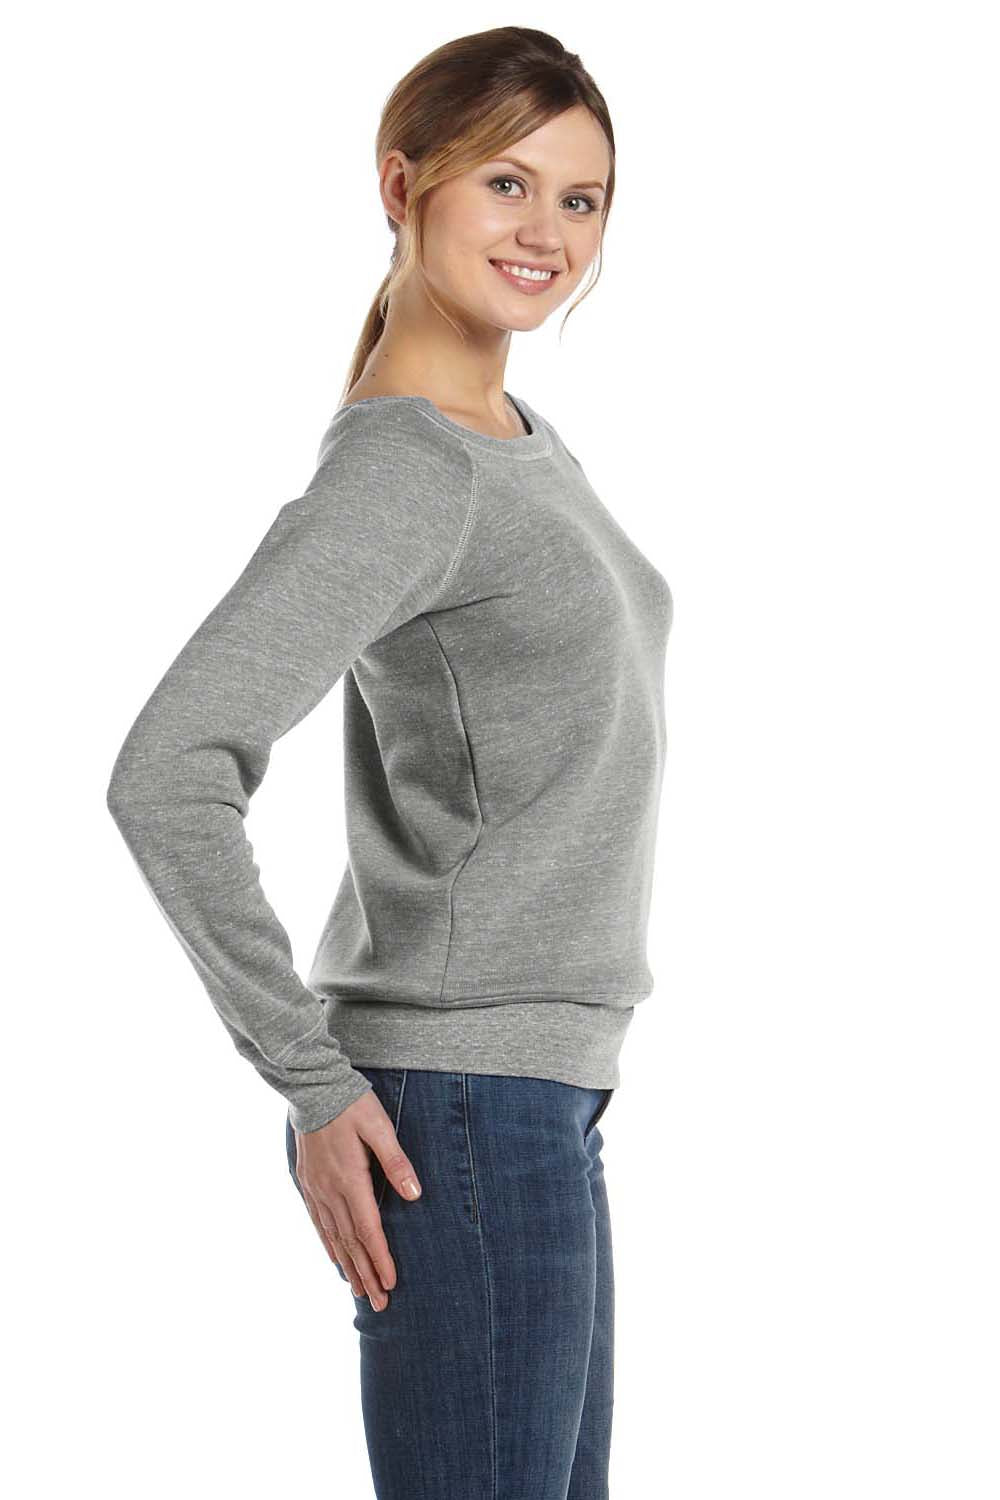 Bella + Canvas 7501 Womens Sponge Fleece Wide Neck Sweatshirt Light Grey Marble Side